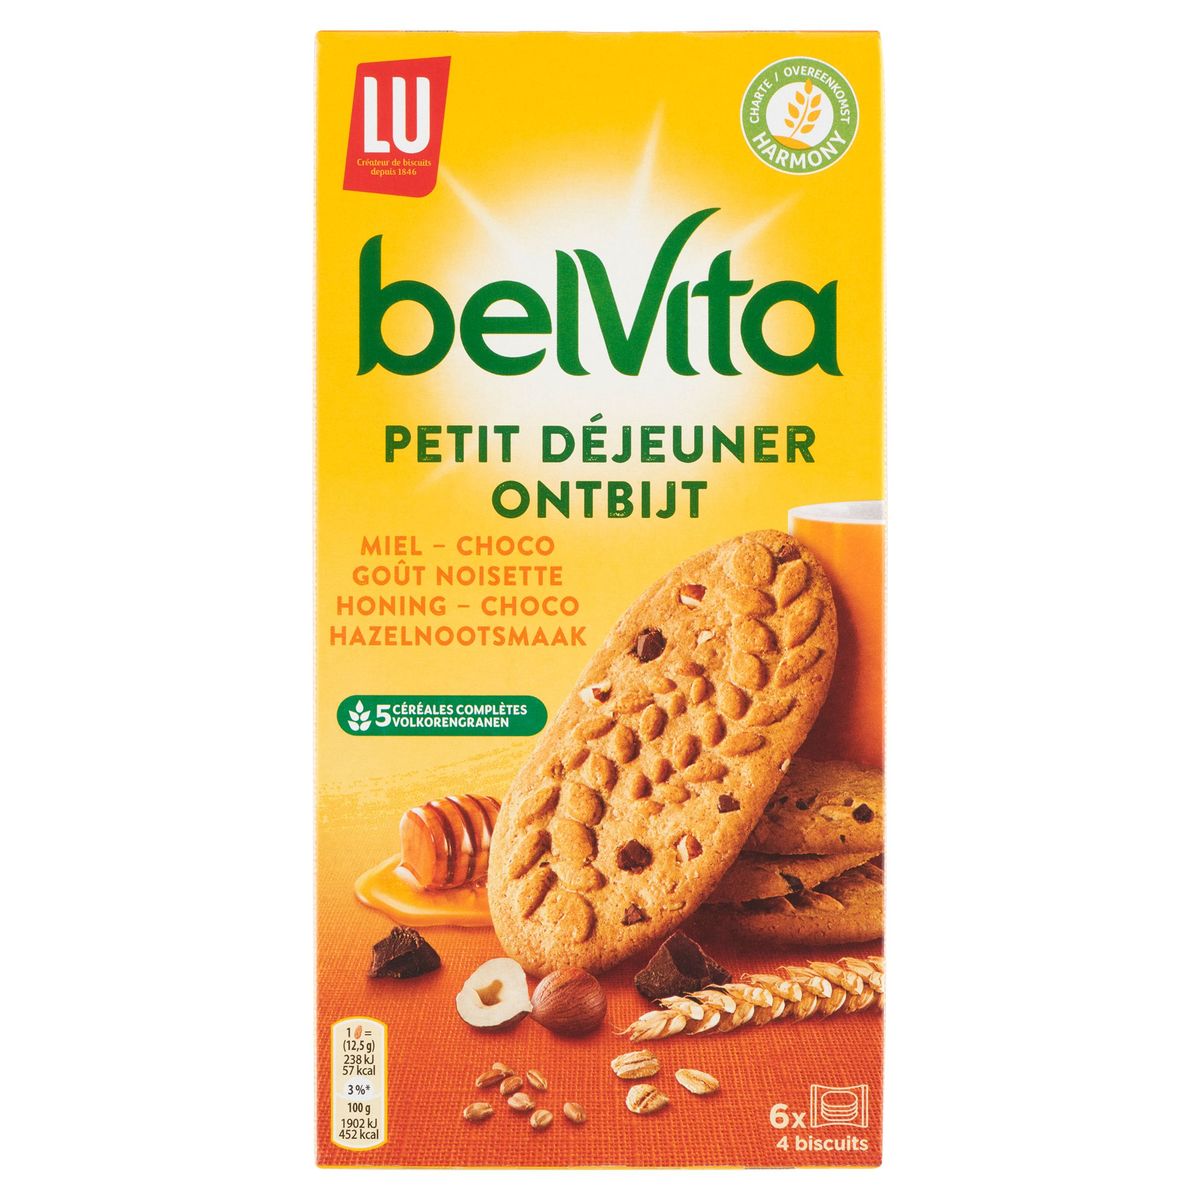 BelVita Petit Déjeuner Miel et Pépites de Chocolat & 5 céréales